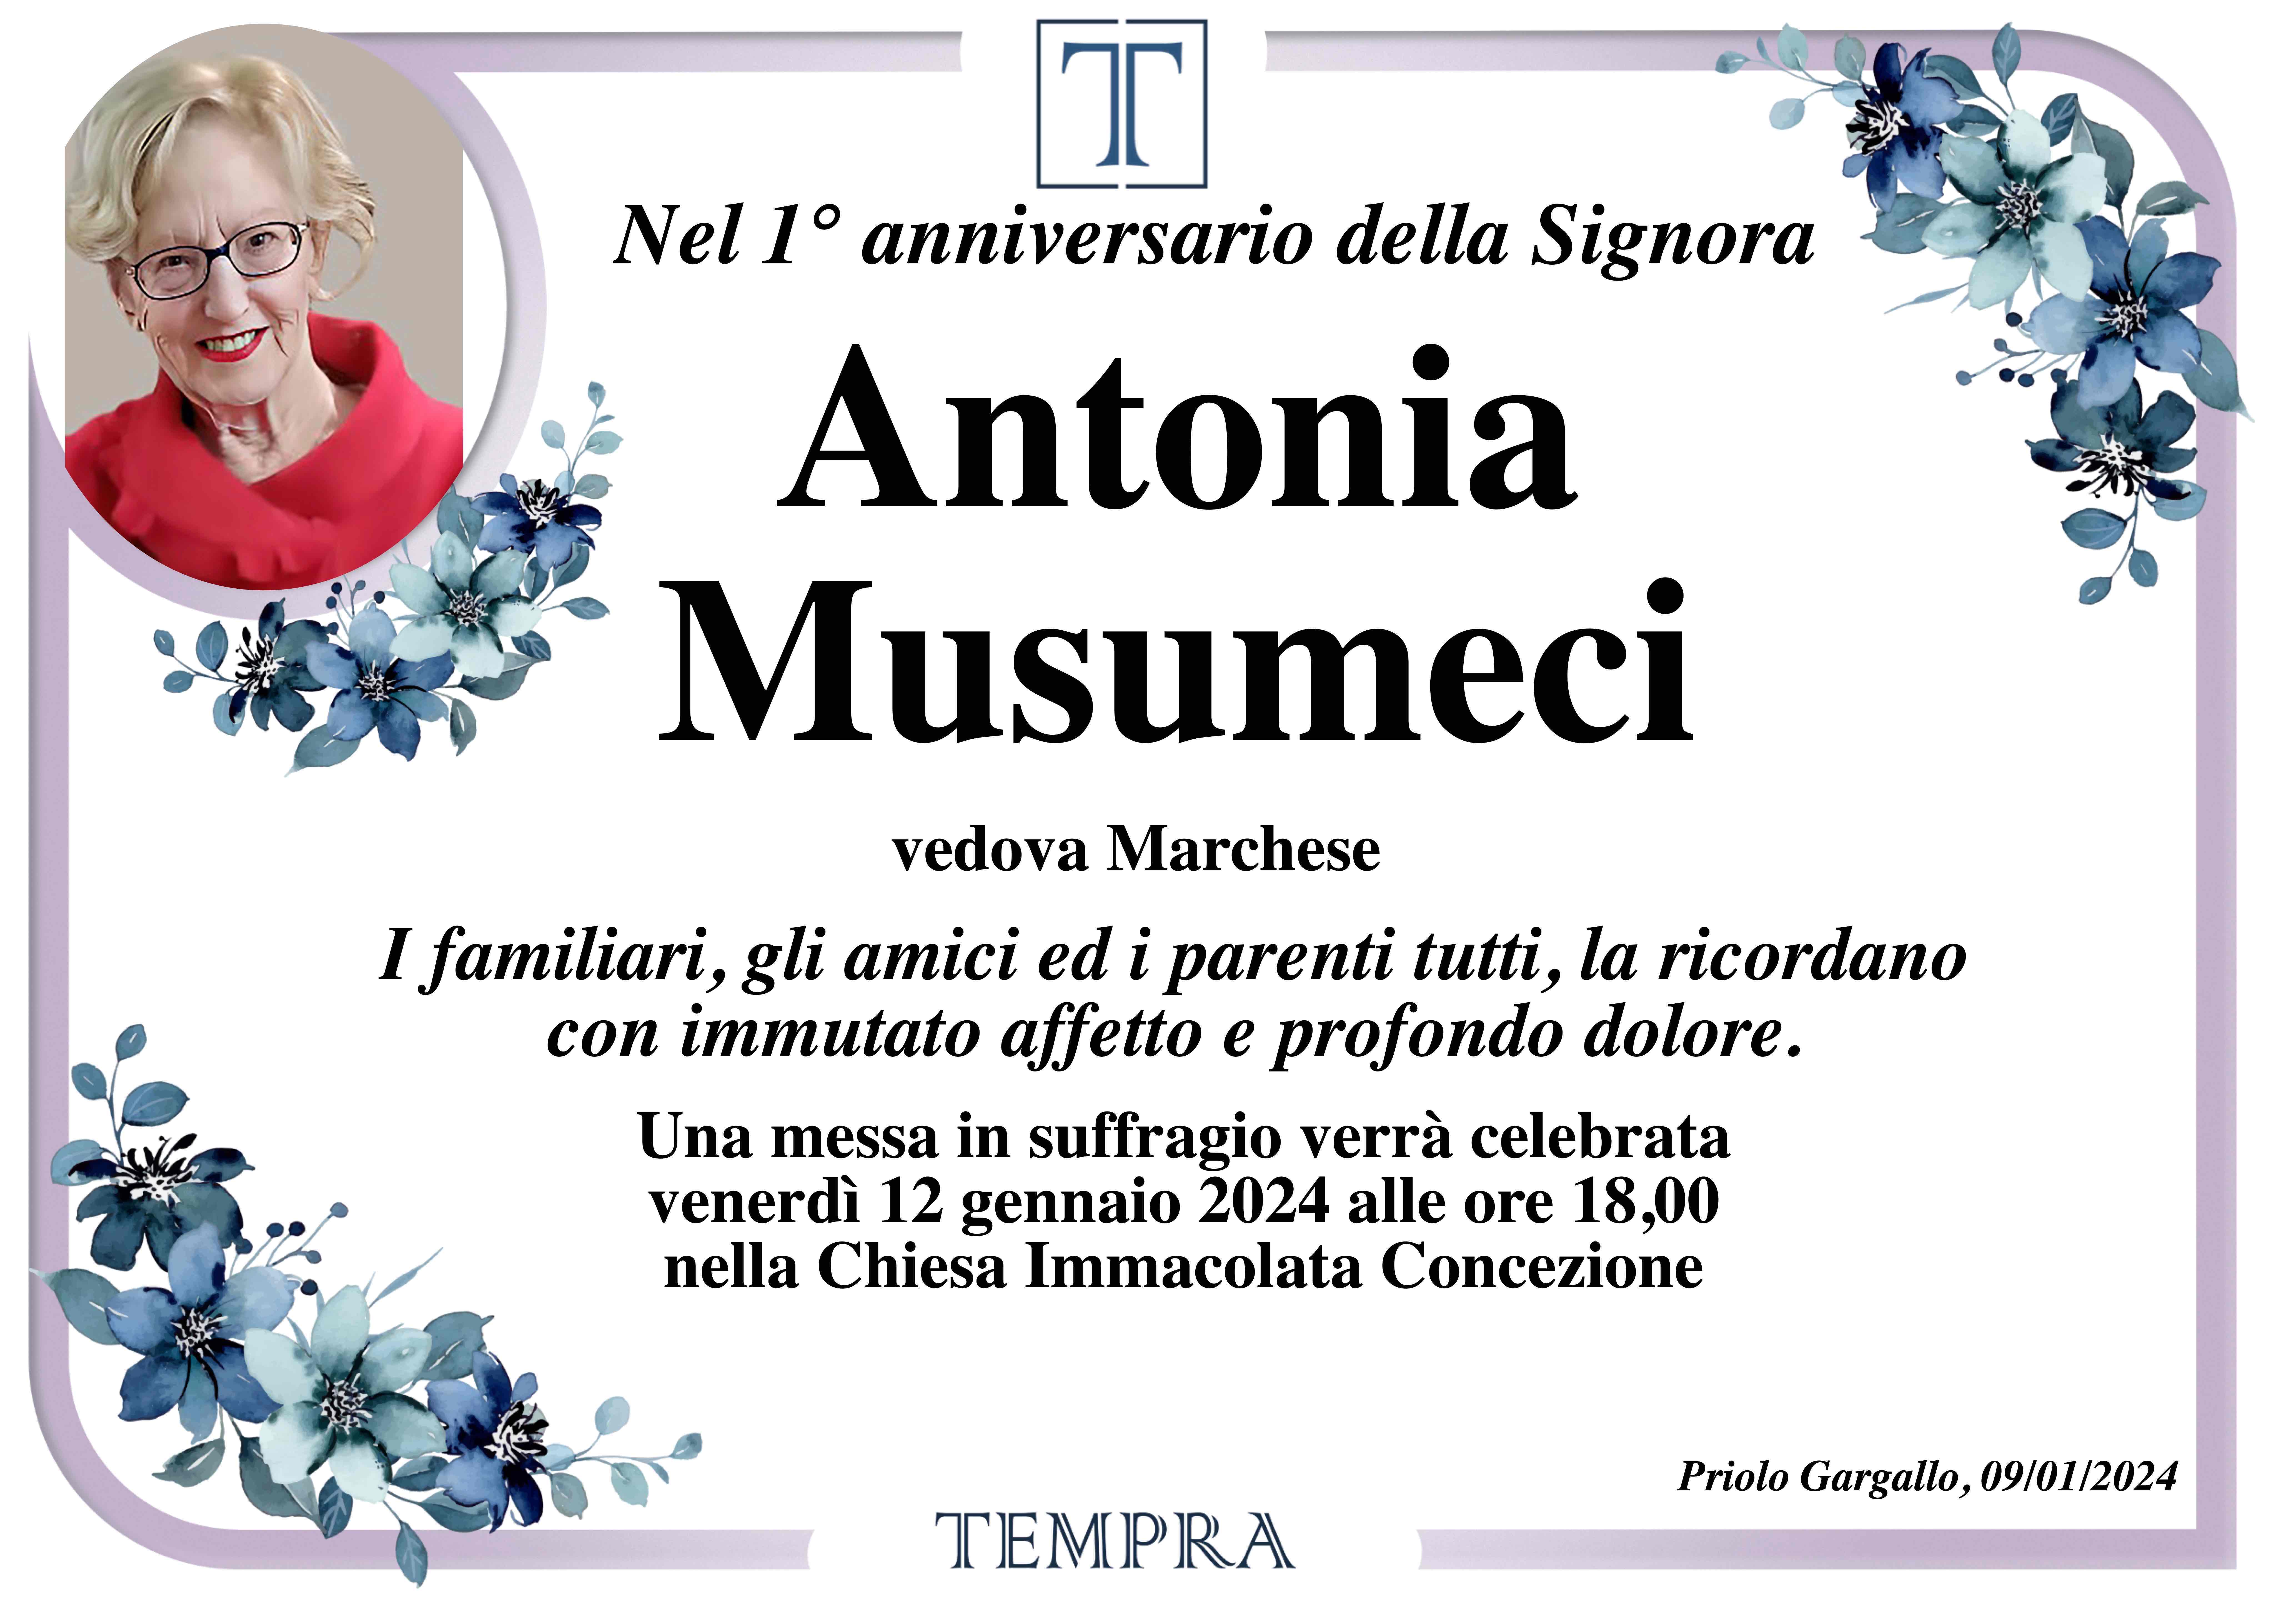 Antonia Musumeci